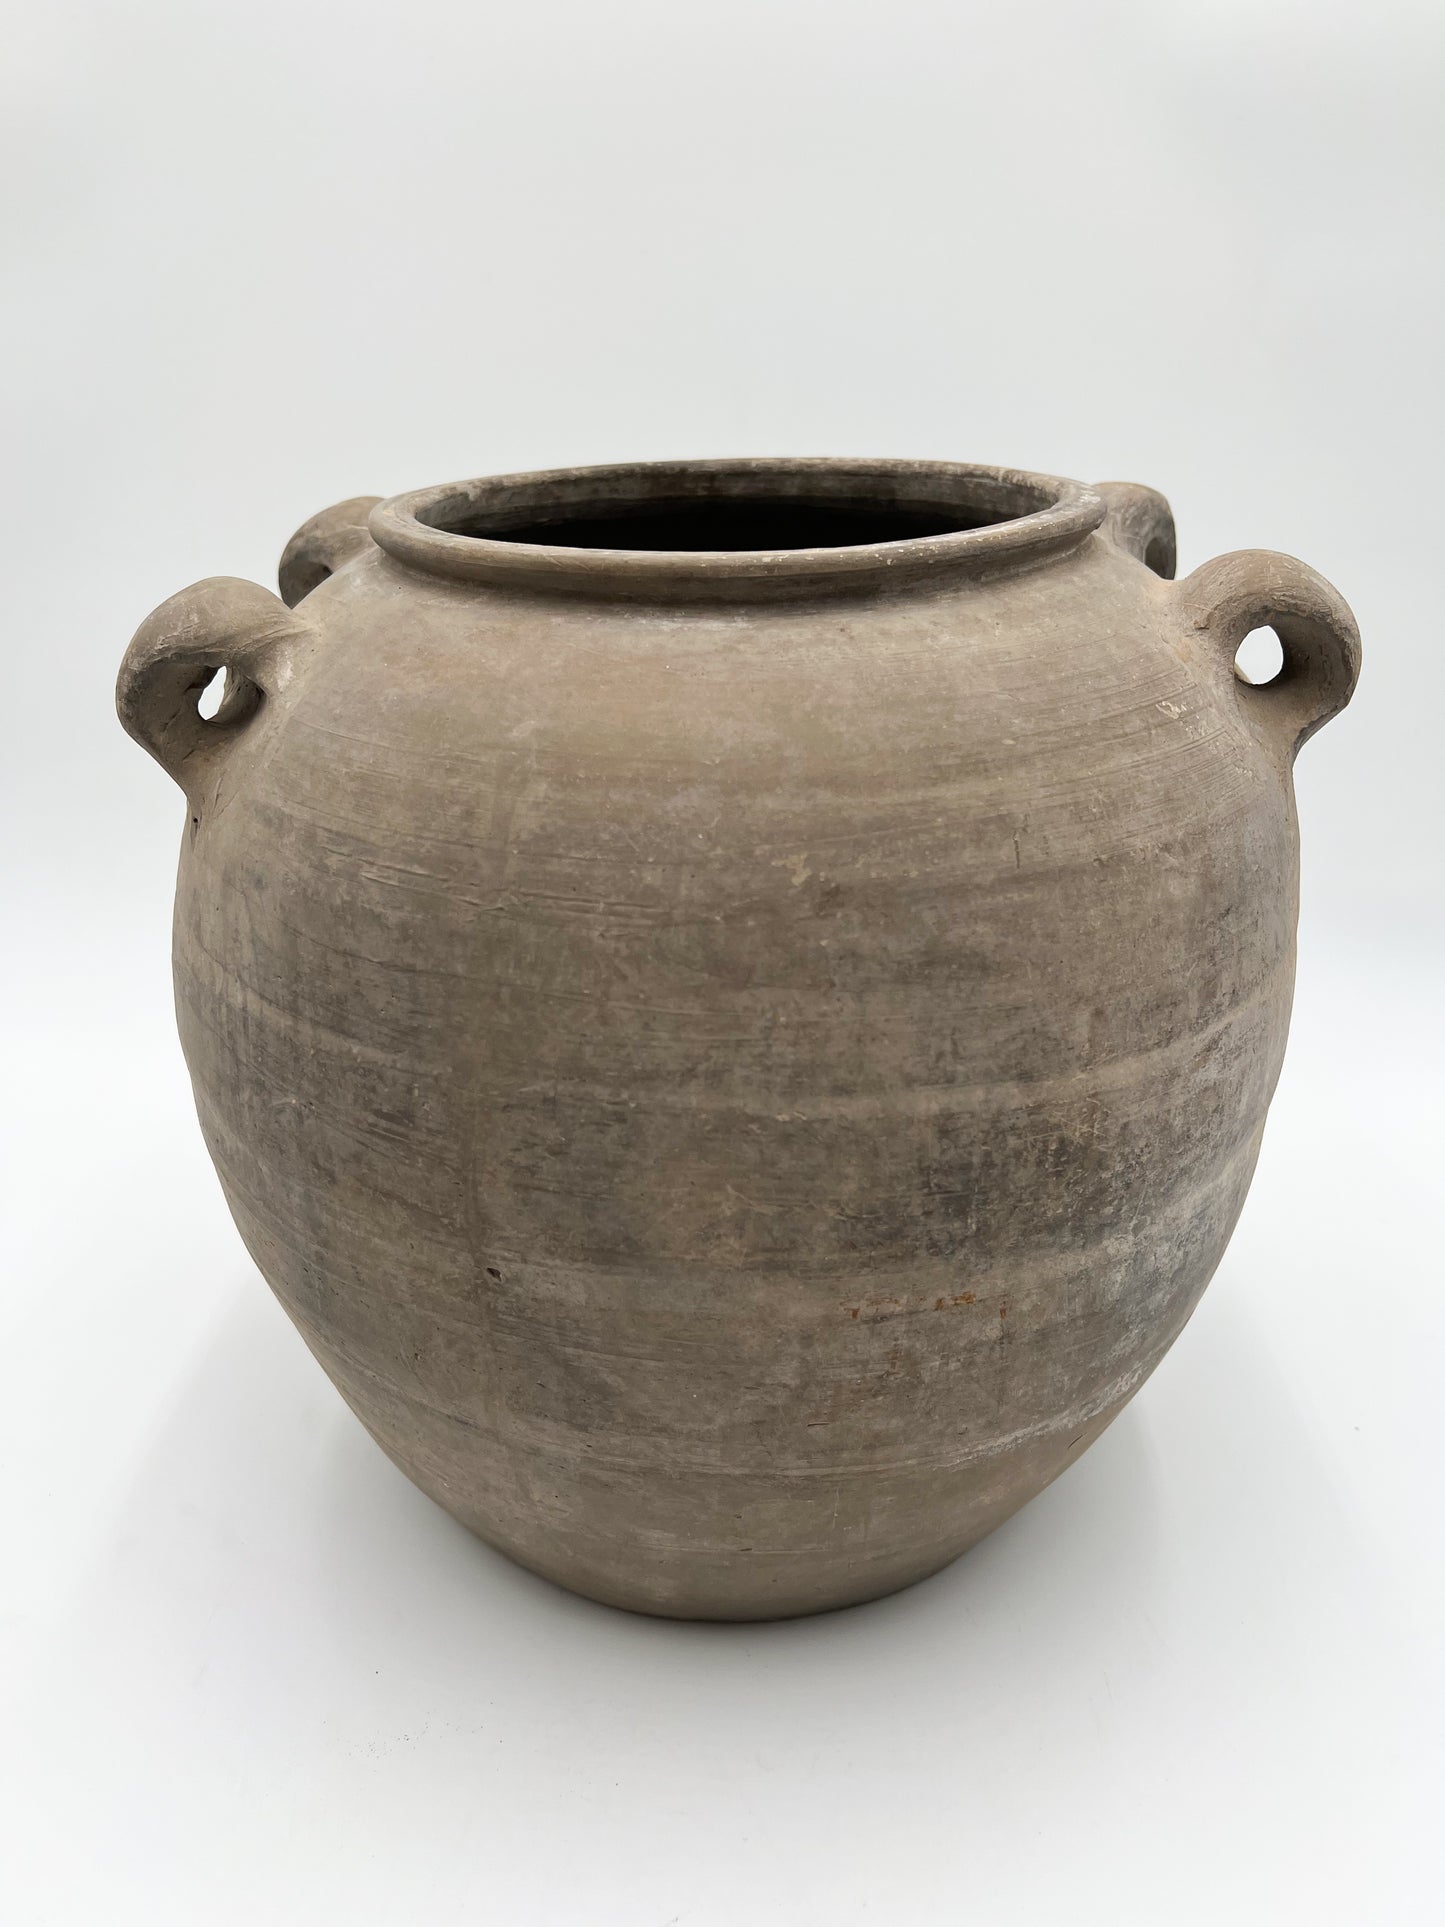 Large Vintage Handled Pot - One of a Kind (SKU: 53)